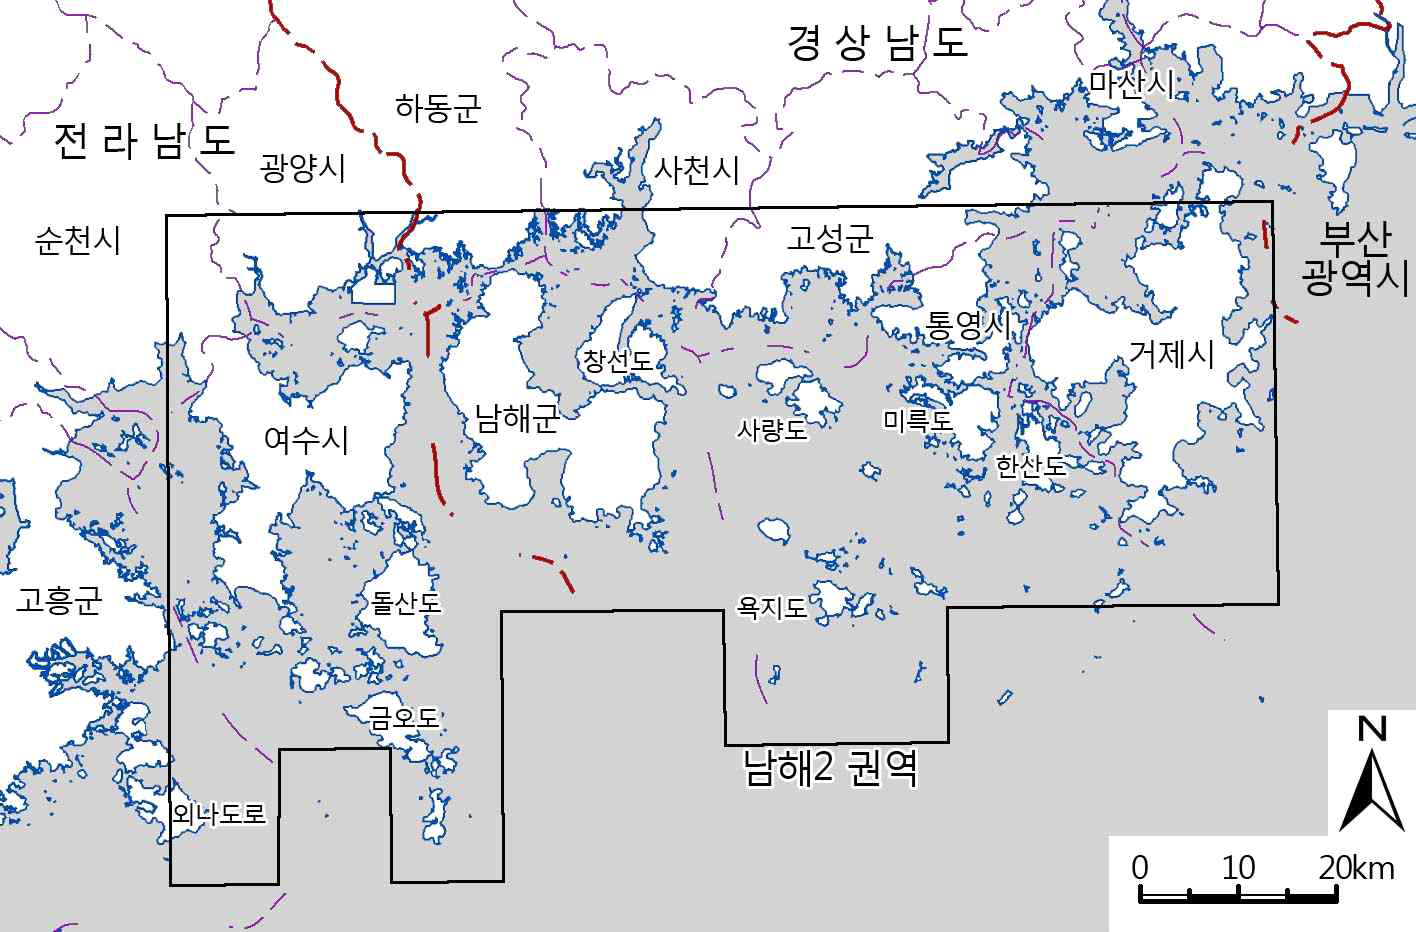 Survey sites of Namhae 3 sub-regions.